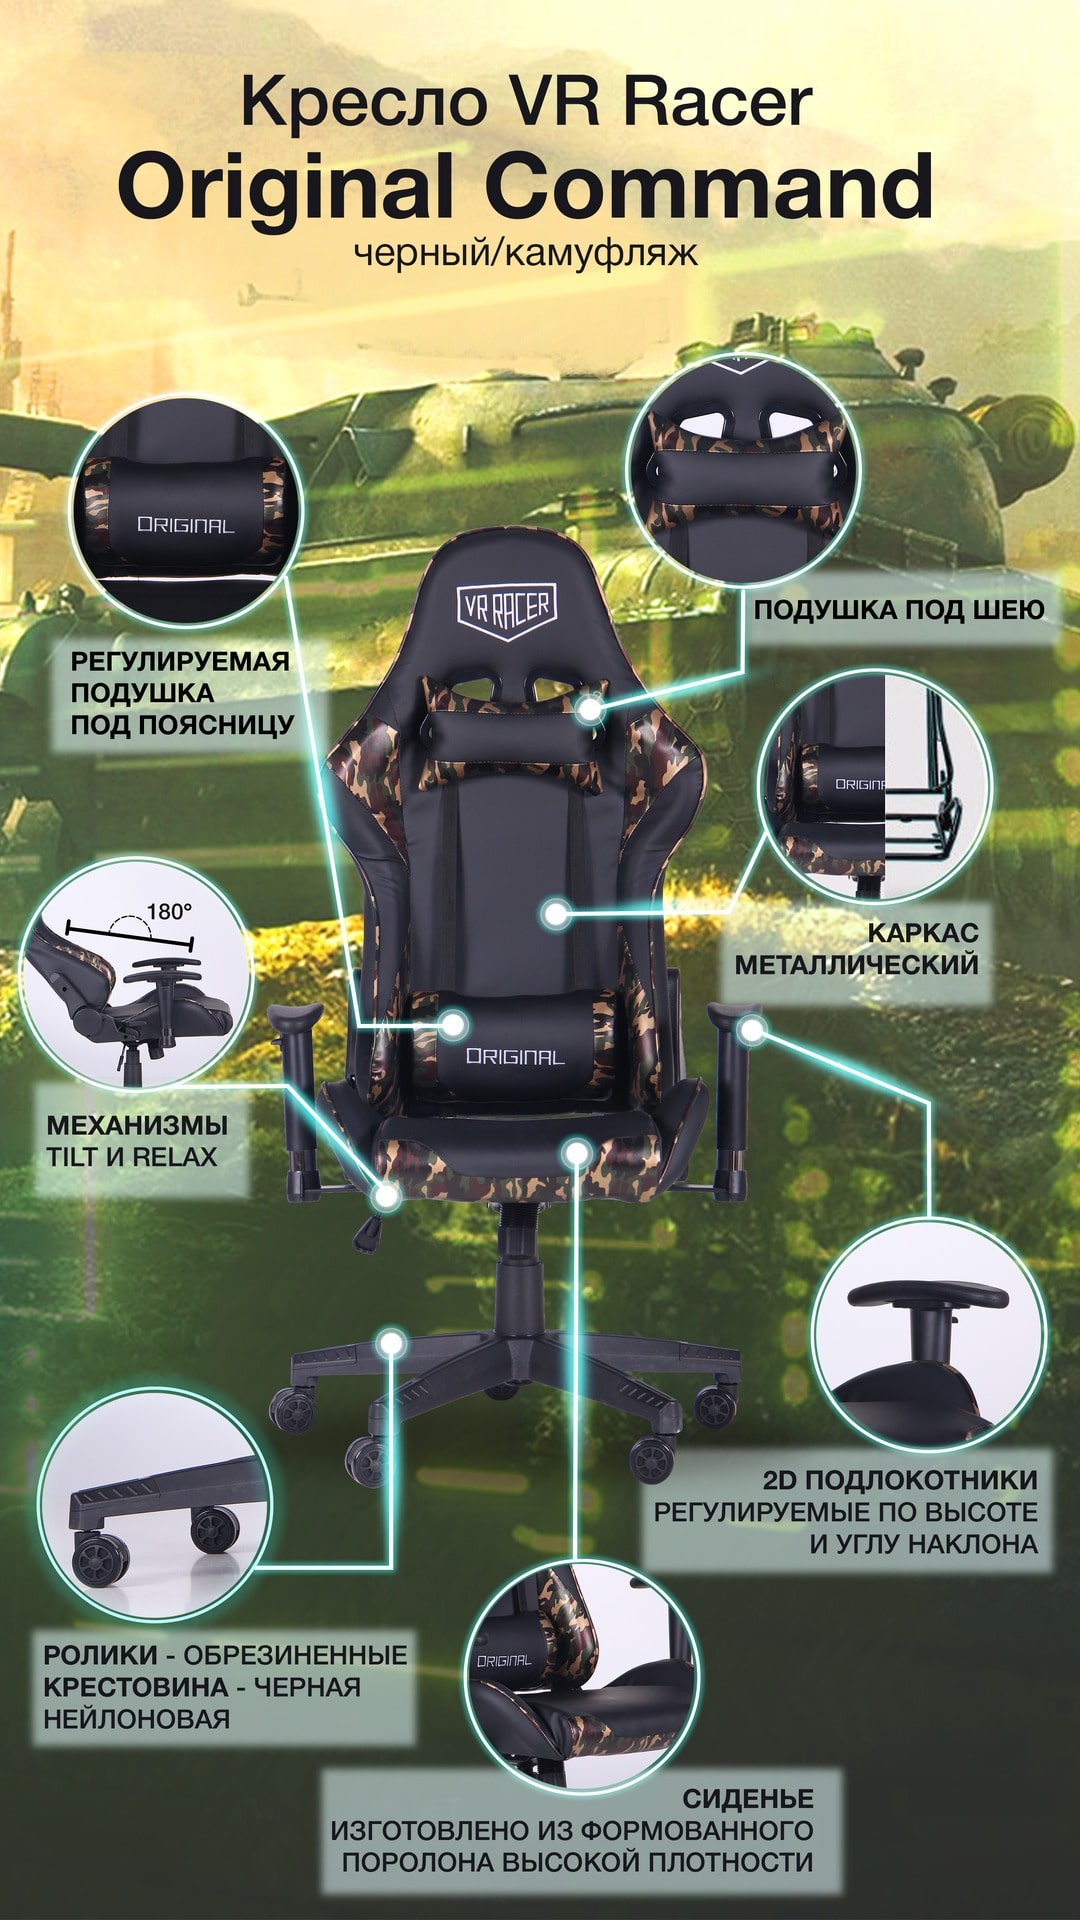 Кресло VR Racer Original Command описание-2